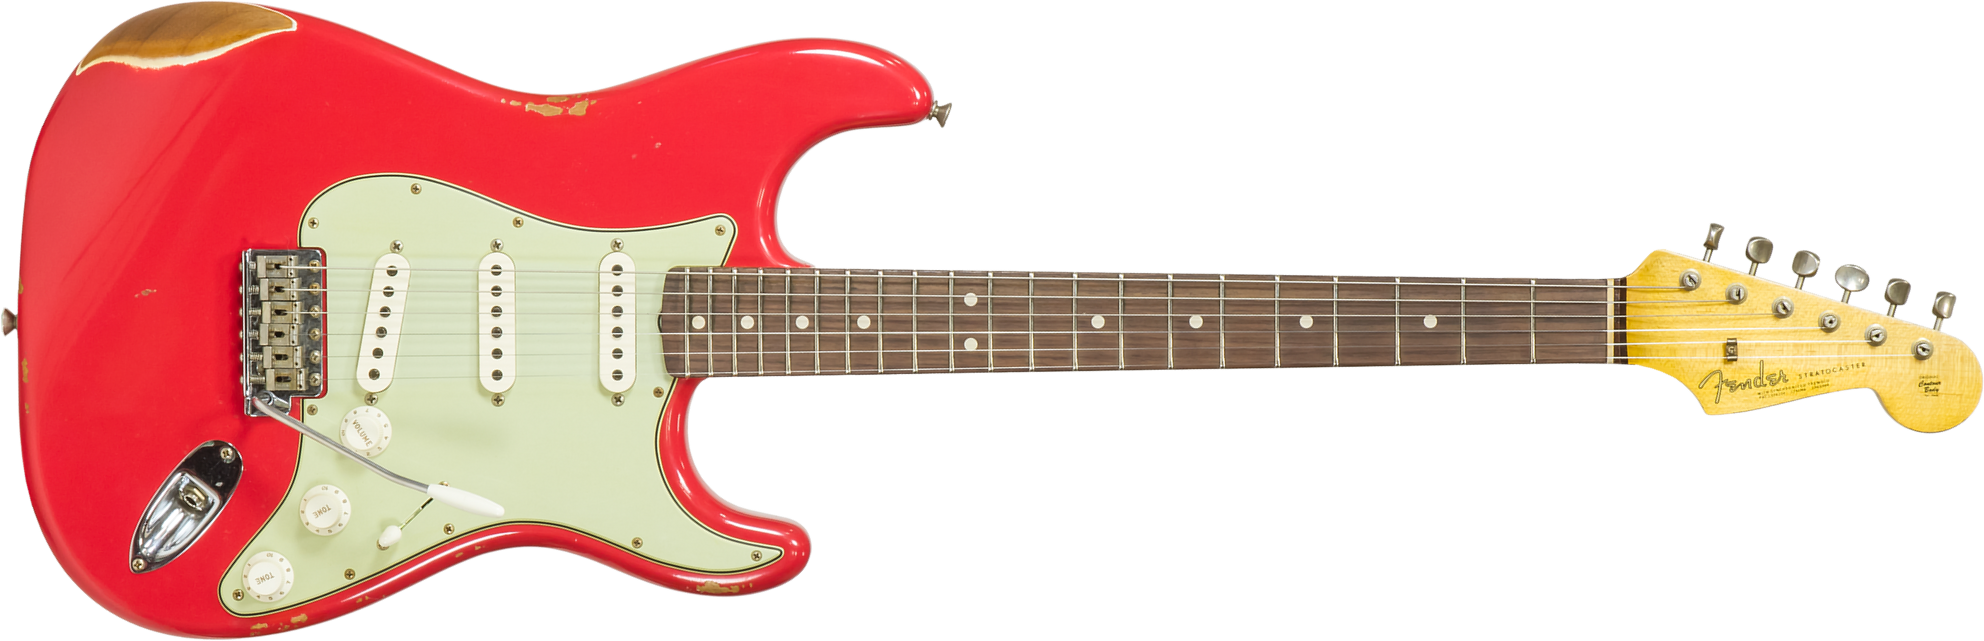 Fender Custom Shop Strat 1963 3s Trem Rw #r117571 - Relic Fiesta Red - Elektrische gitaar in Str-vorm - Main picture